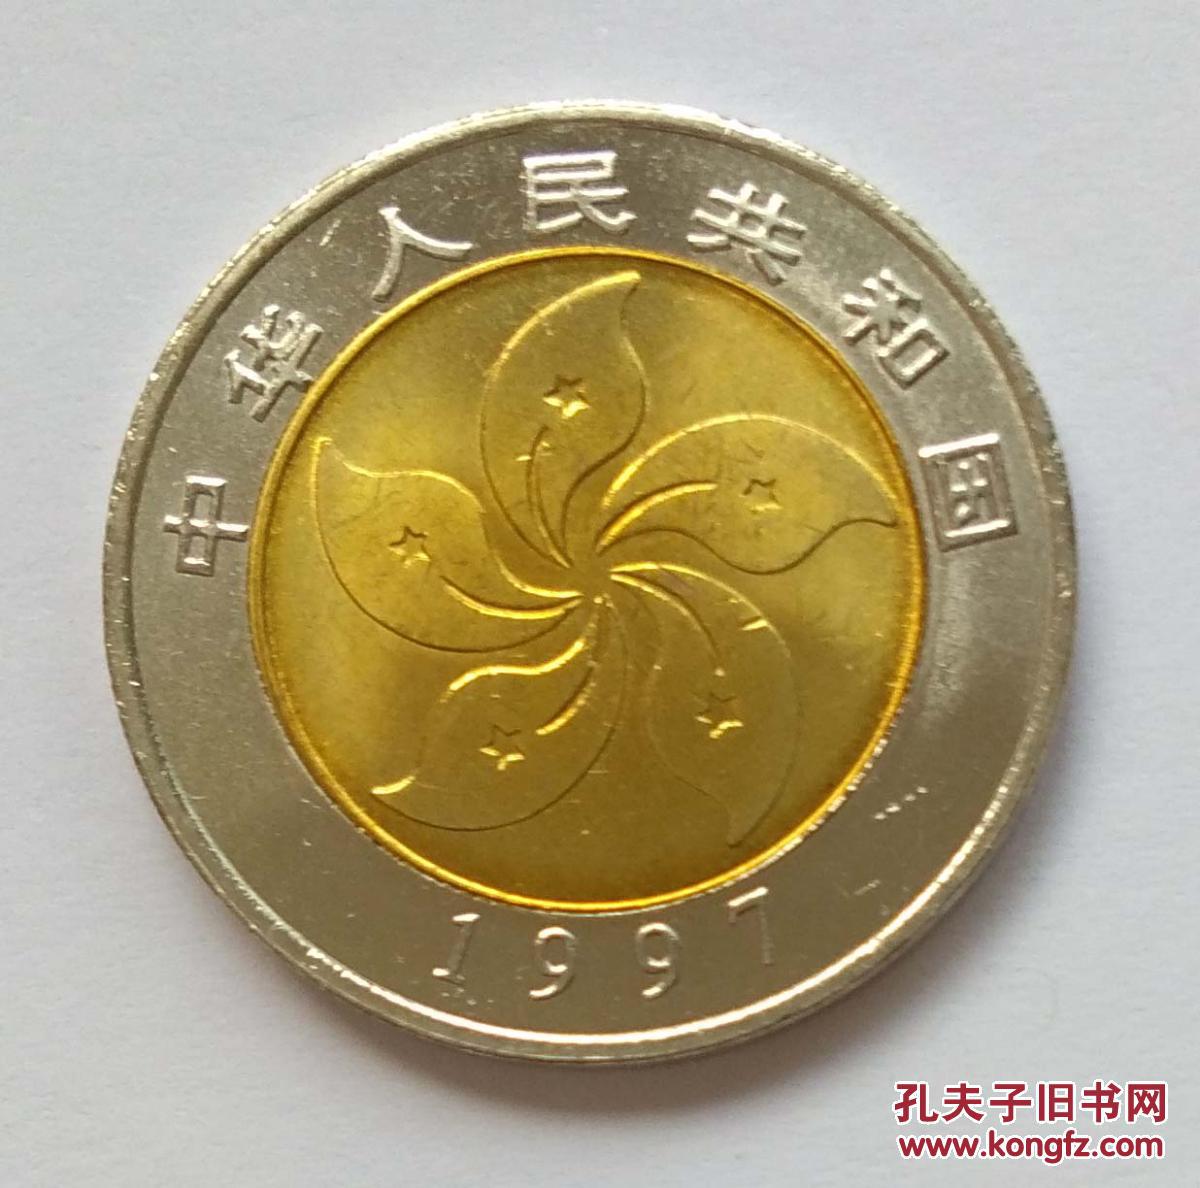 【图】1997年香港回归硬币面值20元纪念币2枚